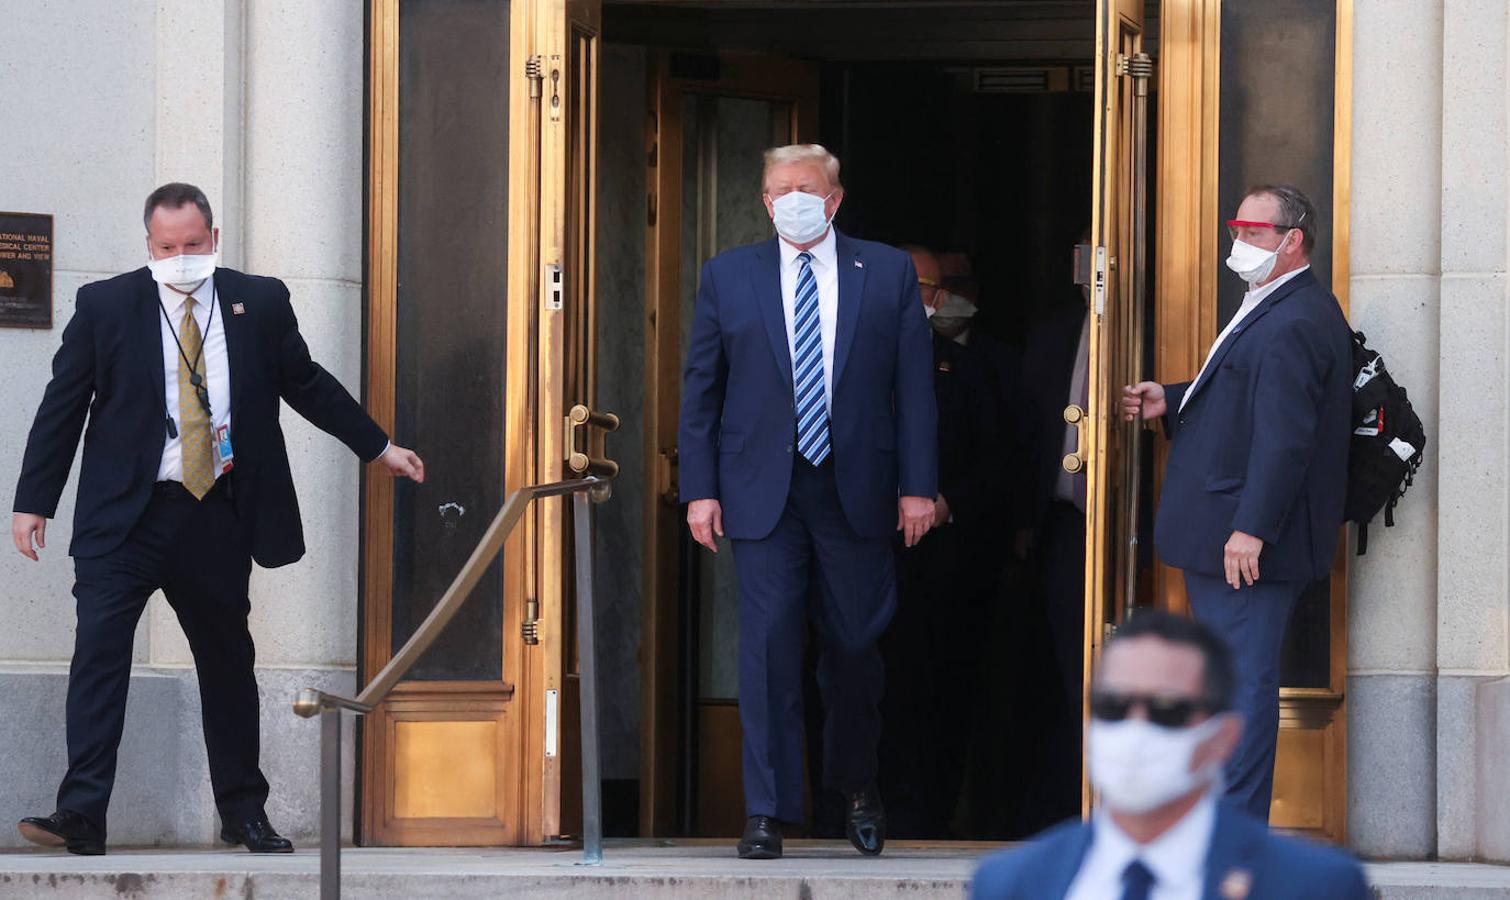 El presidente Trump, en una de las pocas ocasiones en las que se le ha visto con mascarilla durante la campaña electoral